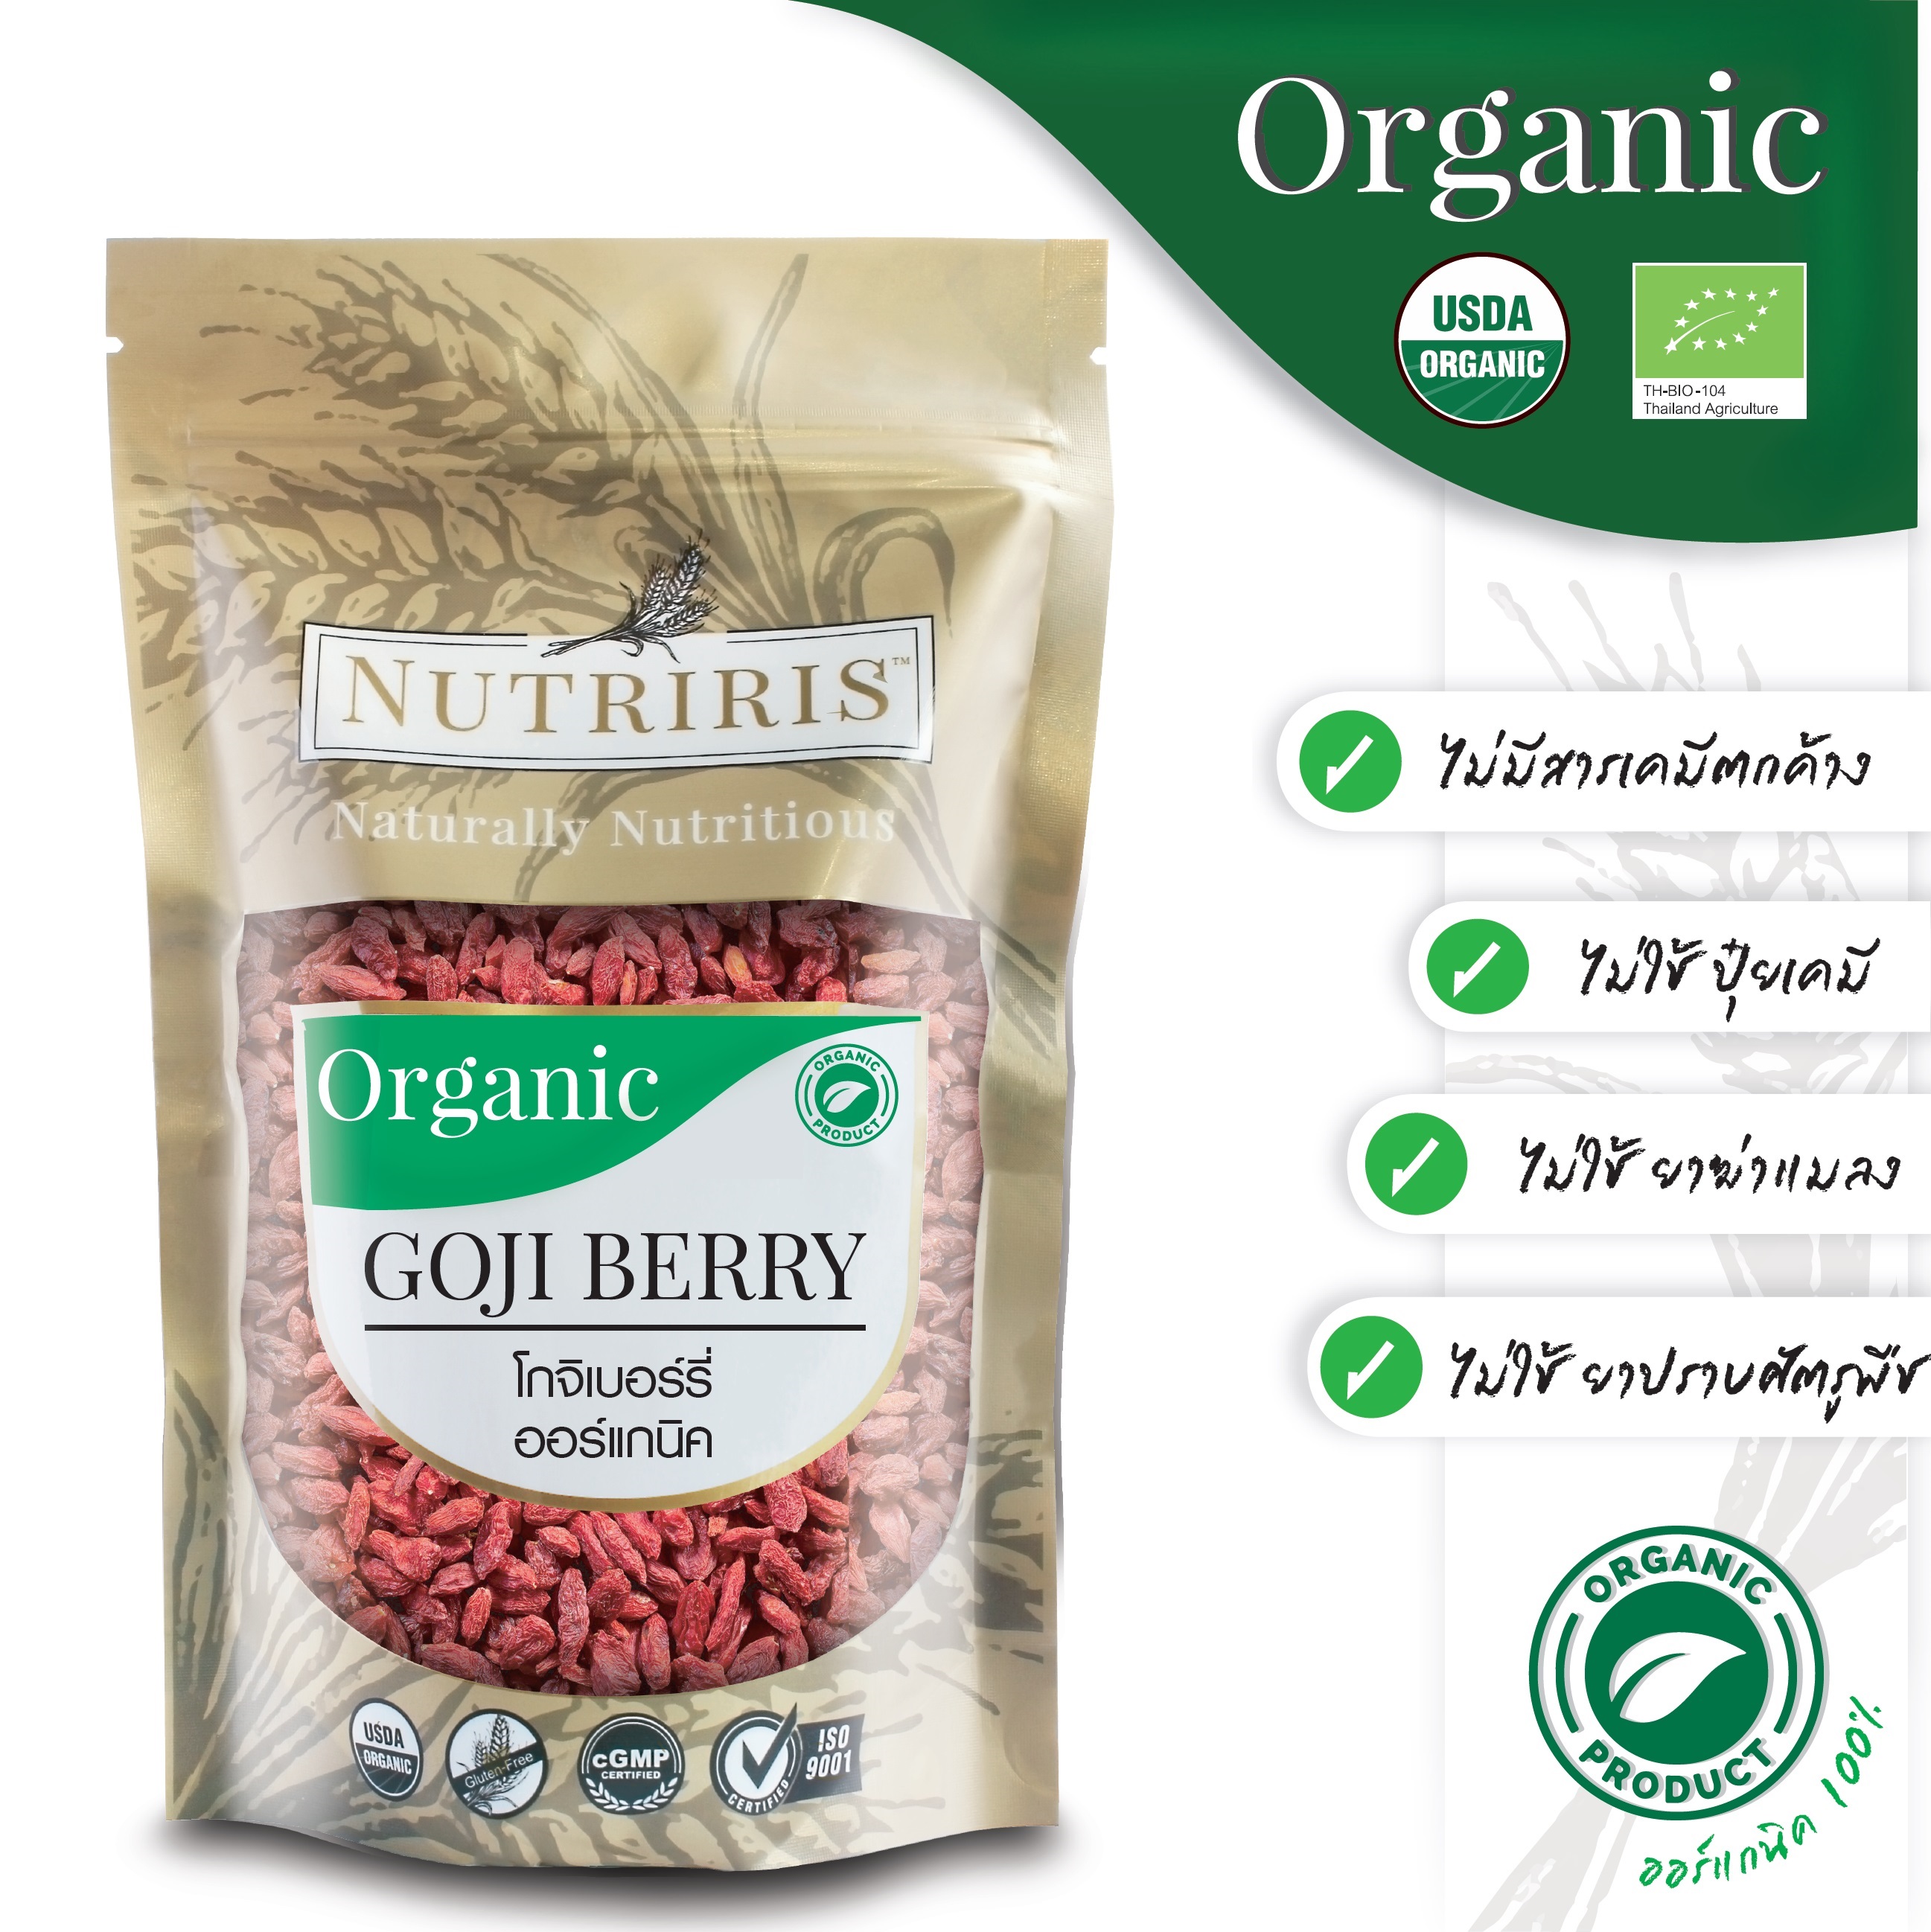 โกจิเบอร์รี่ ออร์แกนิค พร้อมทาน 180 G. จัดส่งฟรี !! เก๋ากี้อบแห้ง อร่อย เม็ดใหญ่ หวานธรรมชาติ ปลอดสารเคมีตกค้าง100% ( Organic Goji Berry ) NUTRIRIS Brand